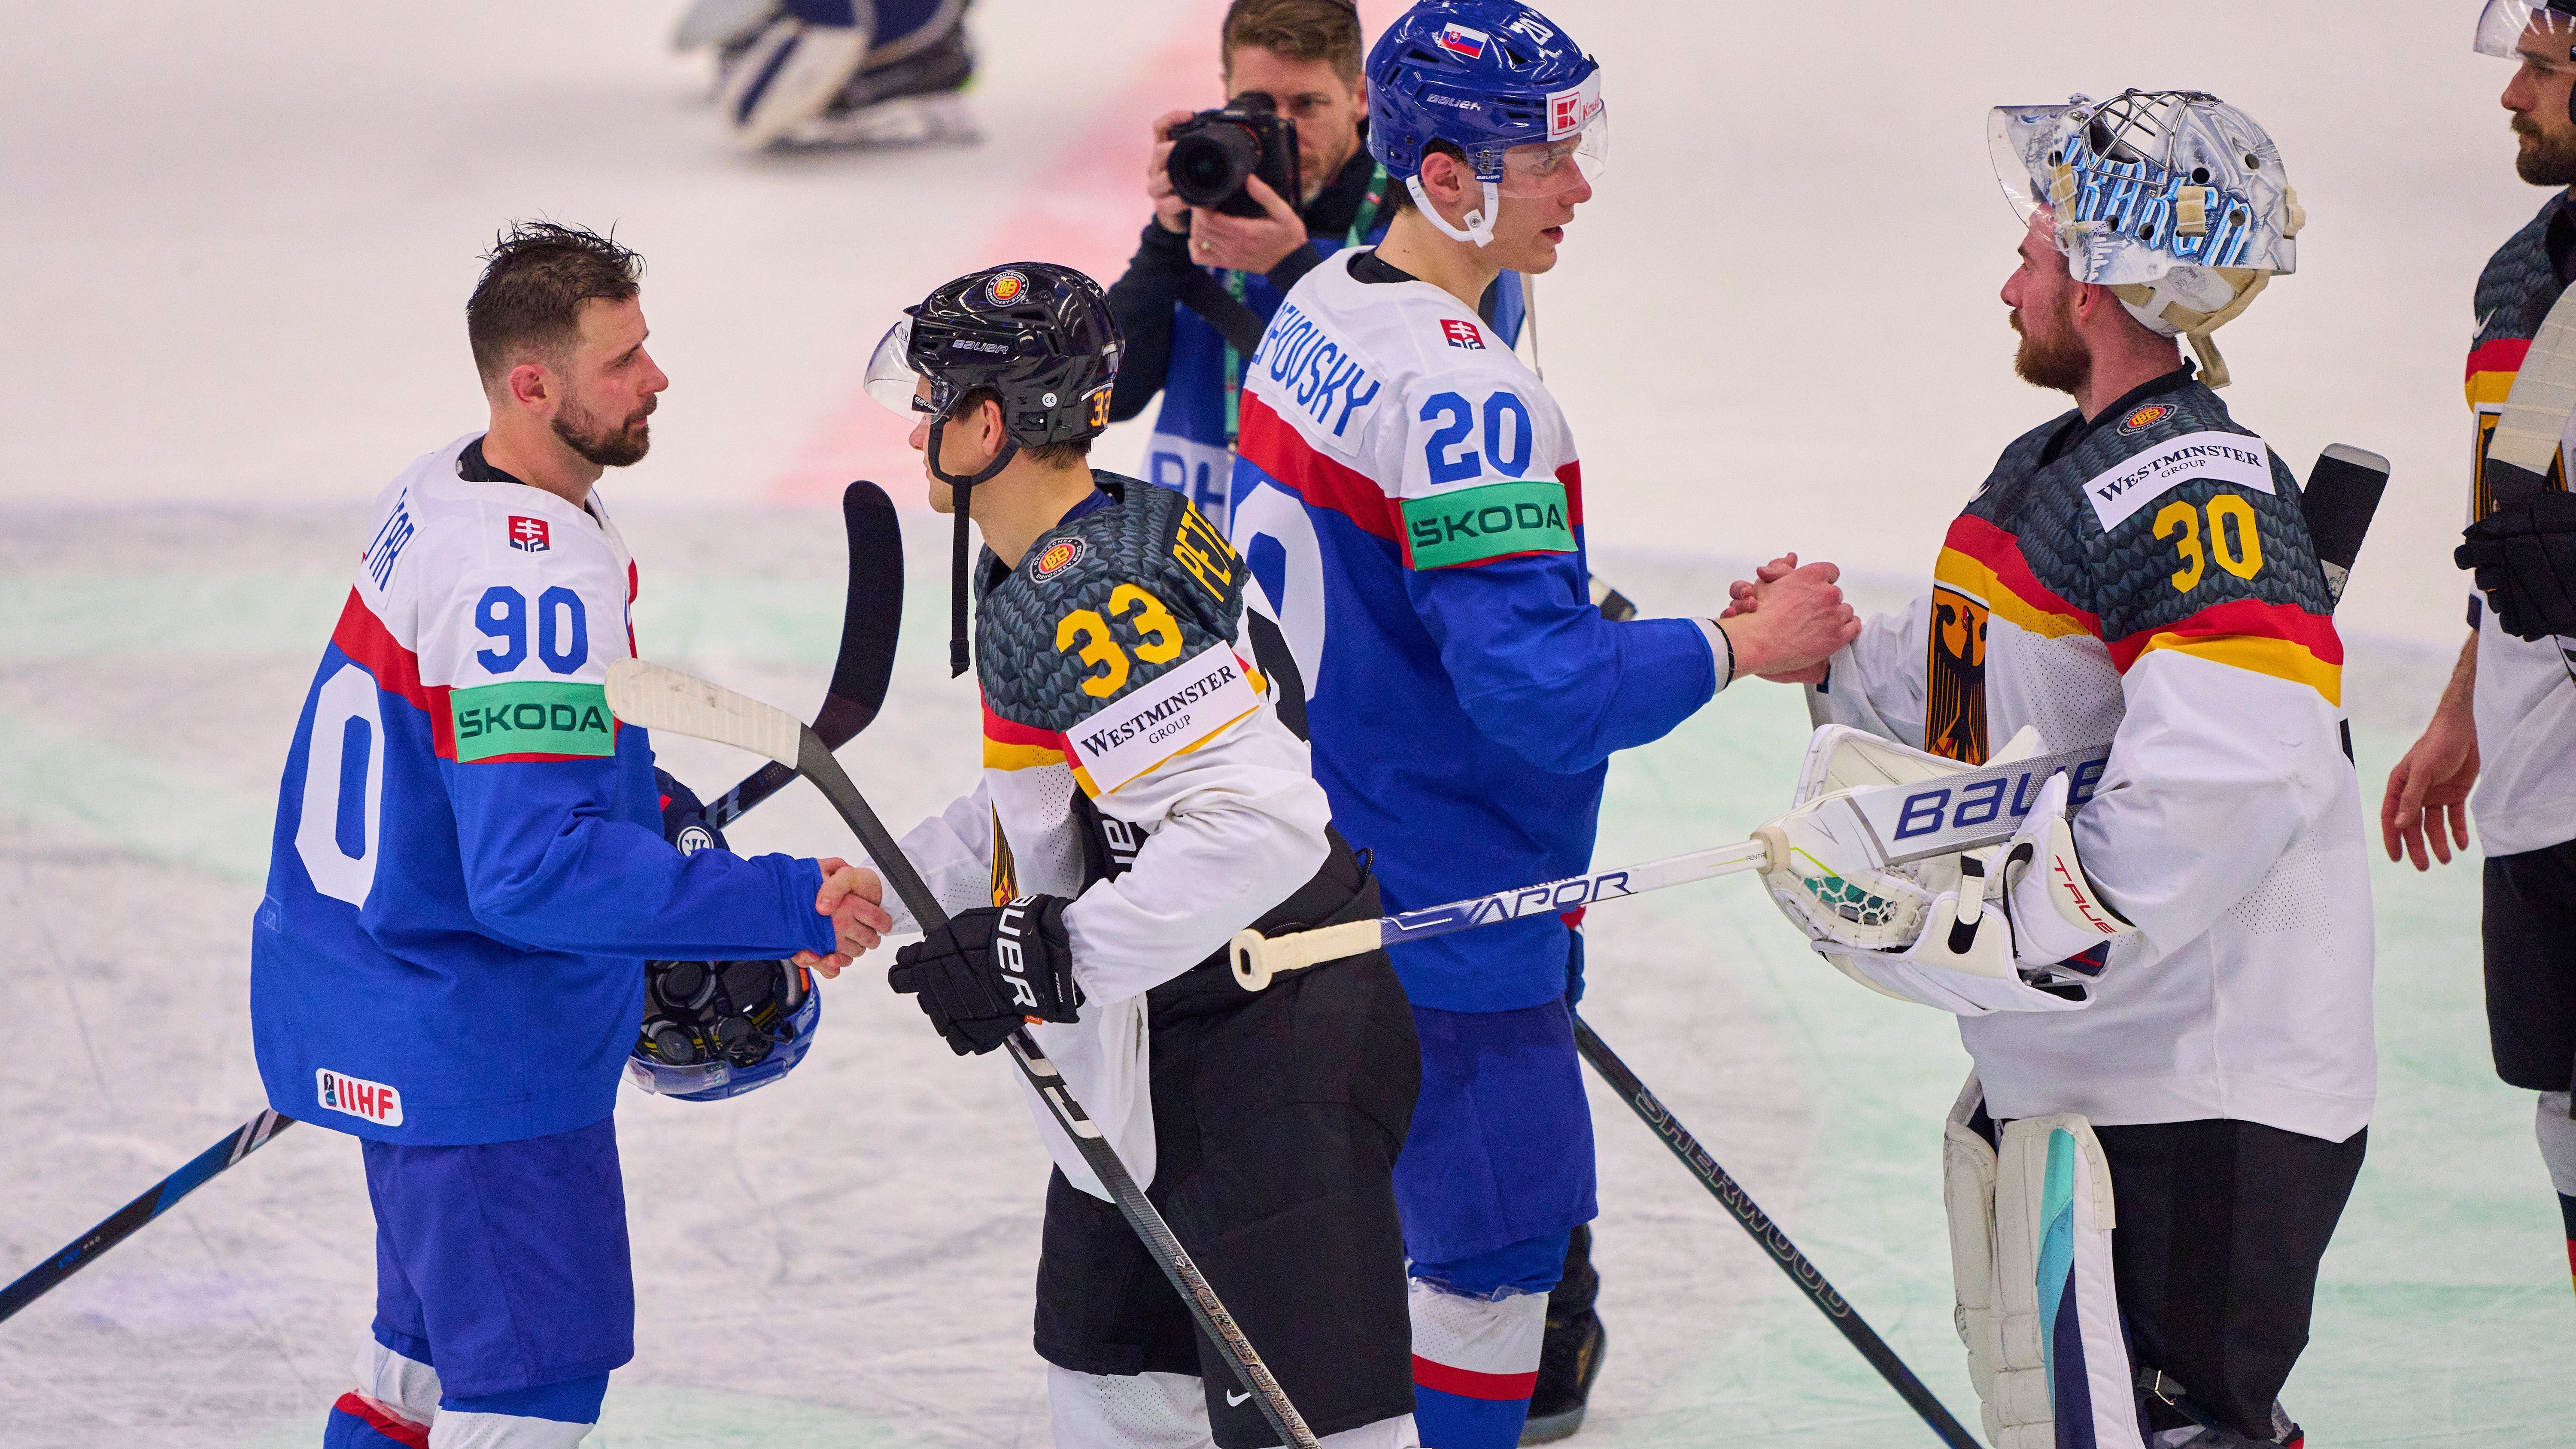 <strong>Slowakei: Juraj Slafkovsky (Montreal Canadiens)</strong> <br>Auch vor Supertalent Juraj Slafkovsky muss sich das deutsche Team in Acht nehmen. Der 20-Jährige wird ebenfalls für das slowakische Team auflaufen. Angeführt vom damals 18 Jahre alten Slafkovsky, der zum MVP des Turniers ausgezeichnet wurde, gewann die Slowakei 2021 Olympia-Bronze.